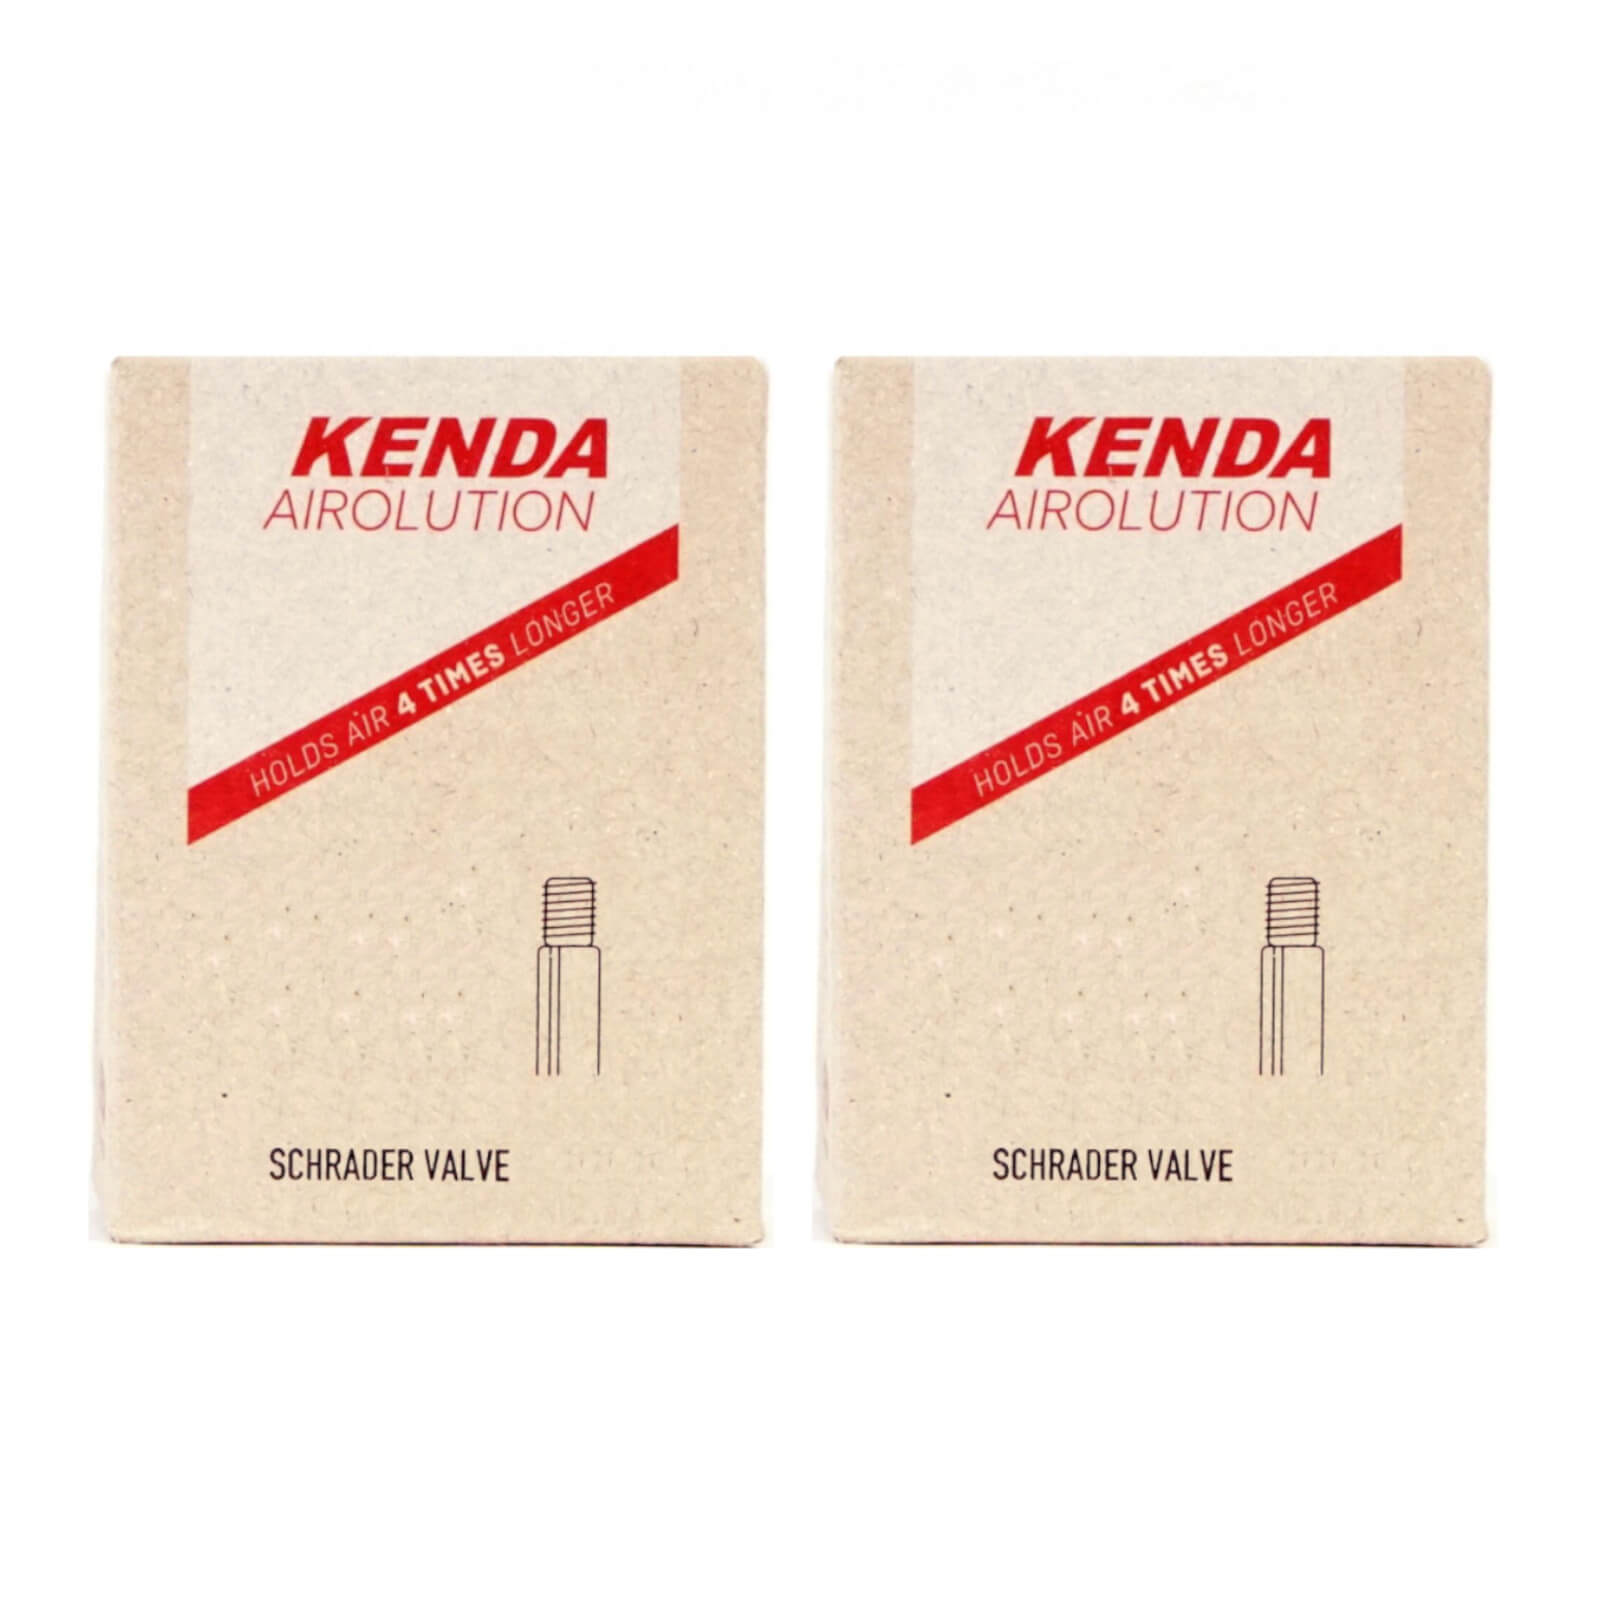 Kenda Airolution 24x2.0-2.4" 24 Inch Schrader Valve Bike Inner Tube Pack of 2